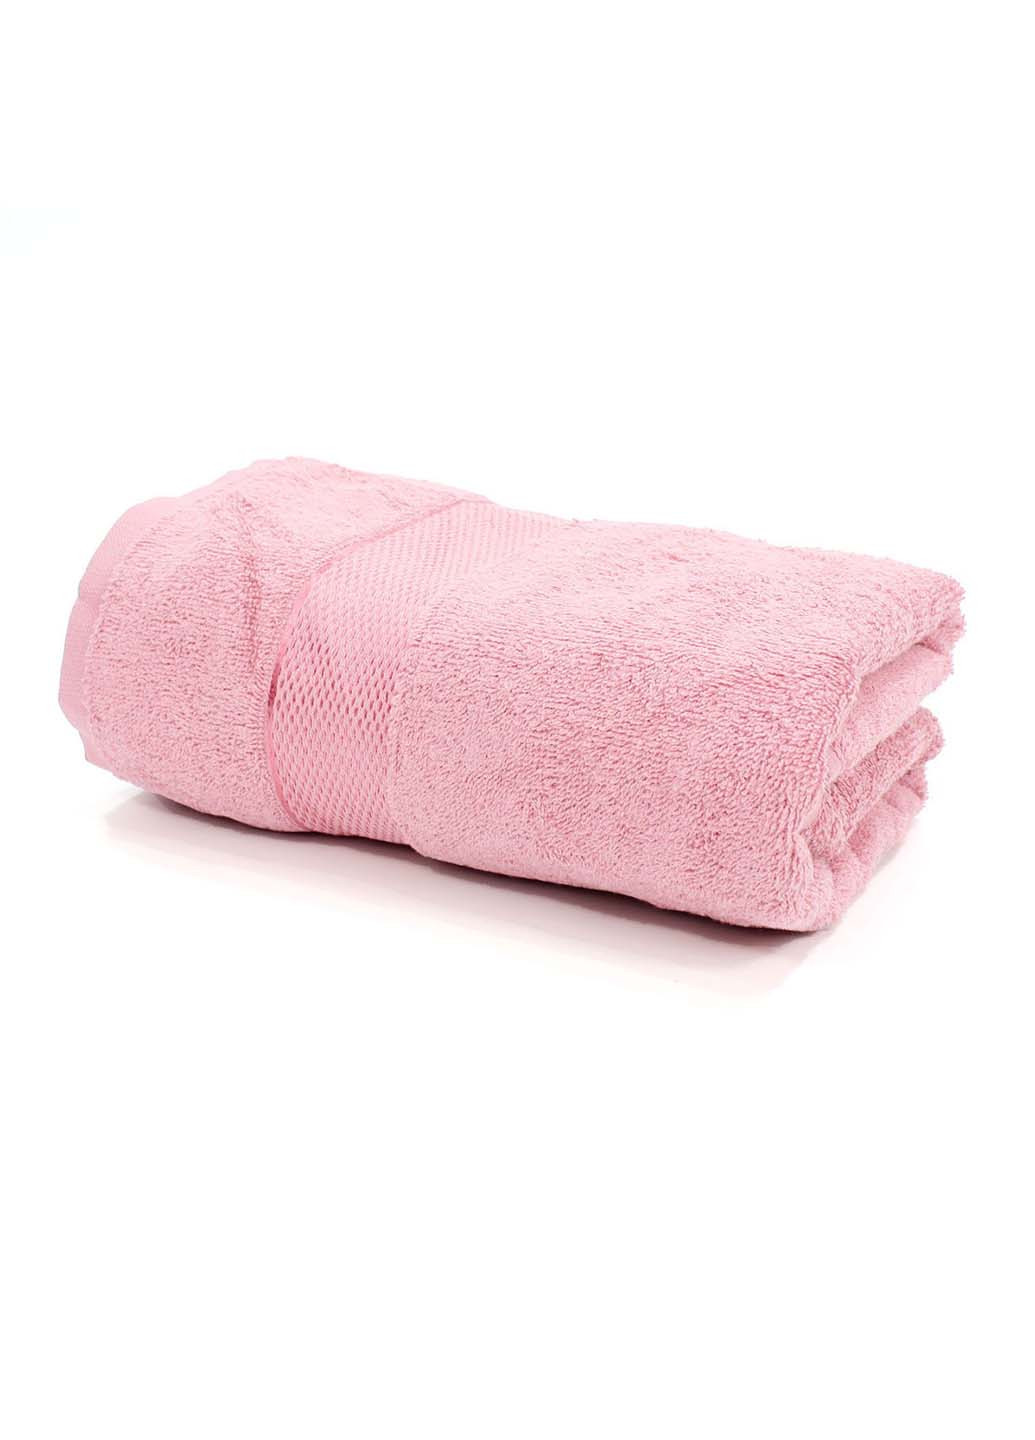 Еней-Плюс набор махровых полотенец бс0020 50х90, 70х140 розовый производство - Украина